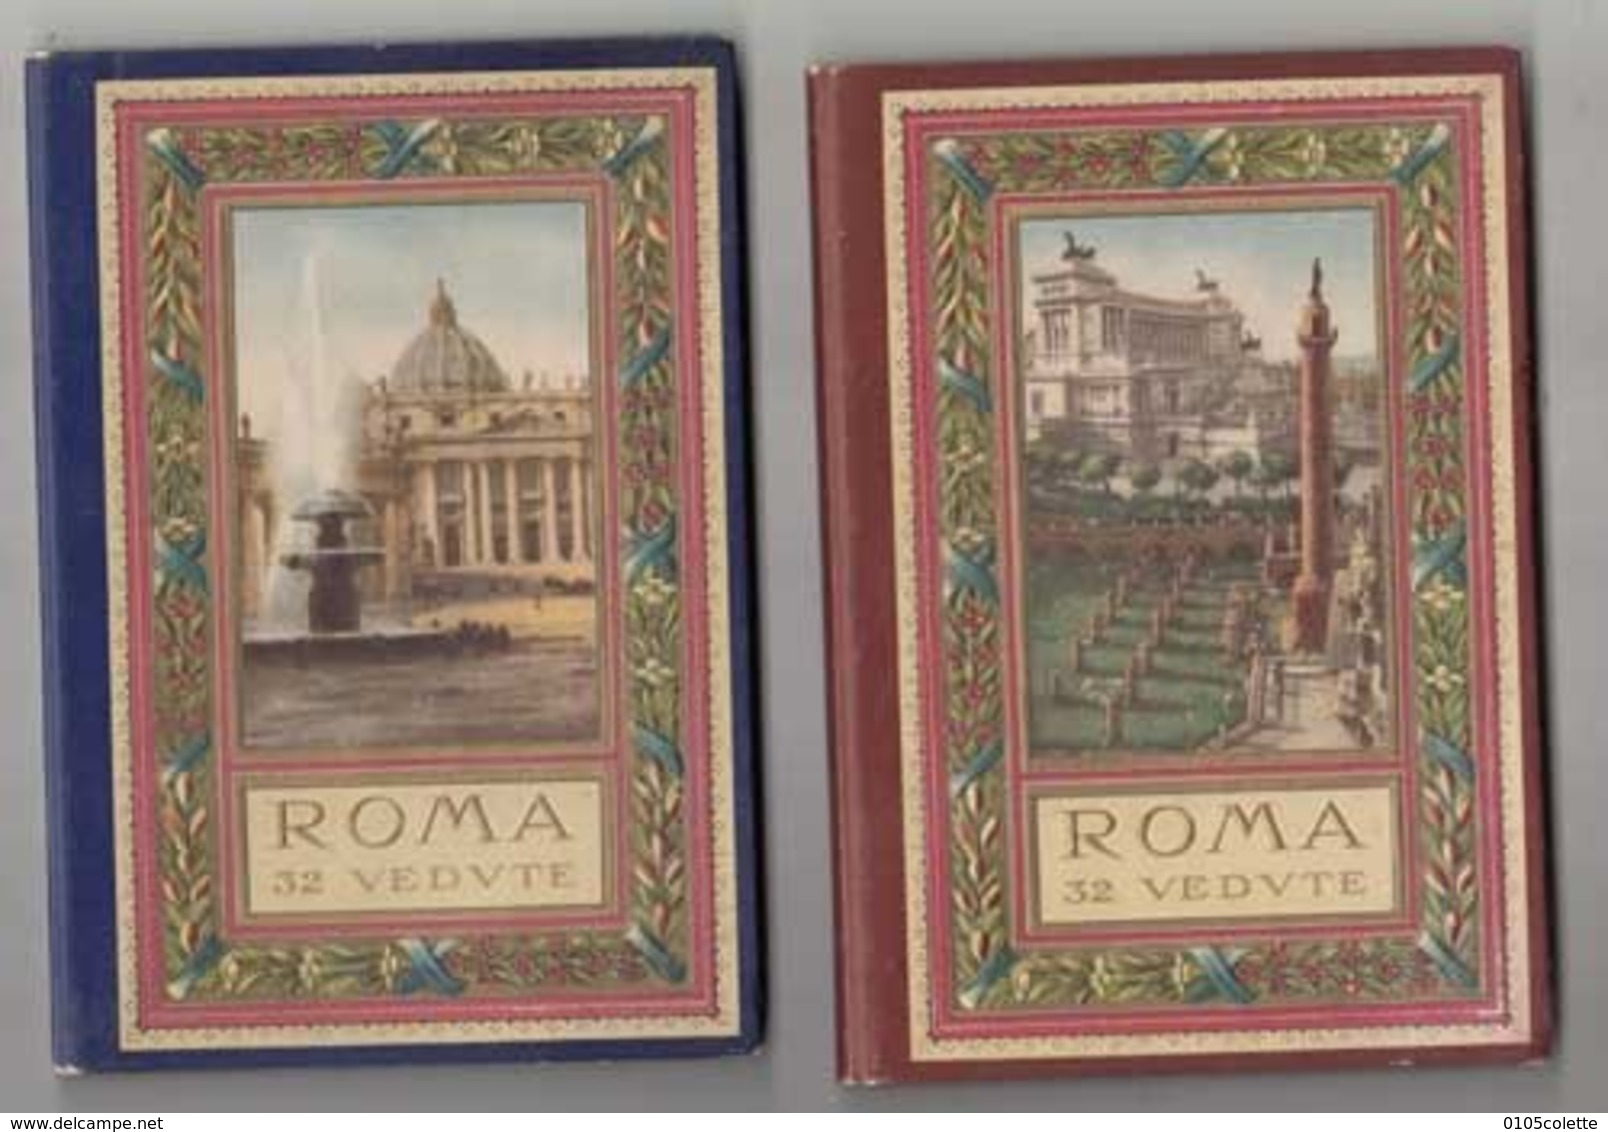 CPA Italie - Rome - 2 Trés Beaux Carnets De Rome De 32 Vedvte (64 Photos )    - Achat Immédiat  (cd 004) - Verzamelingen